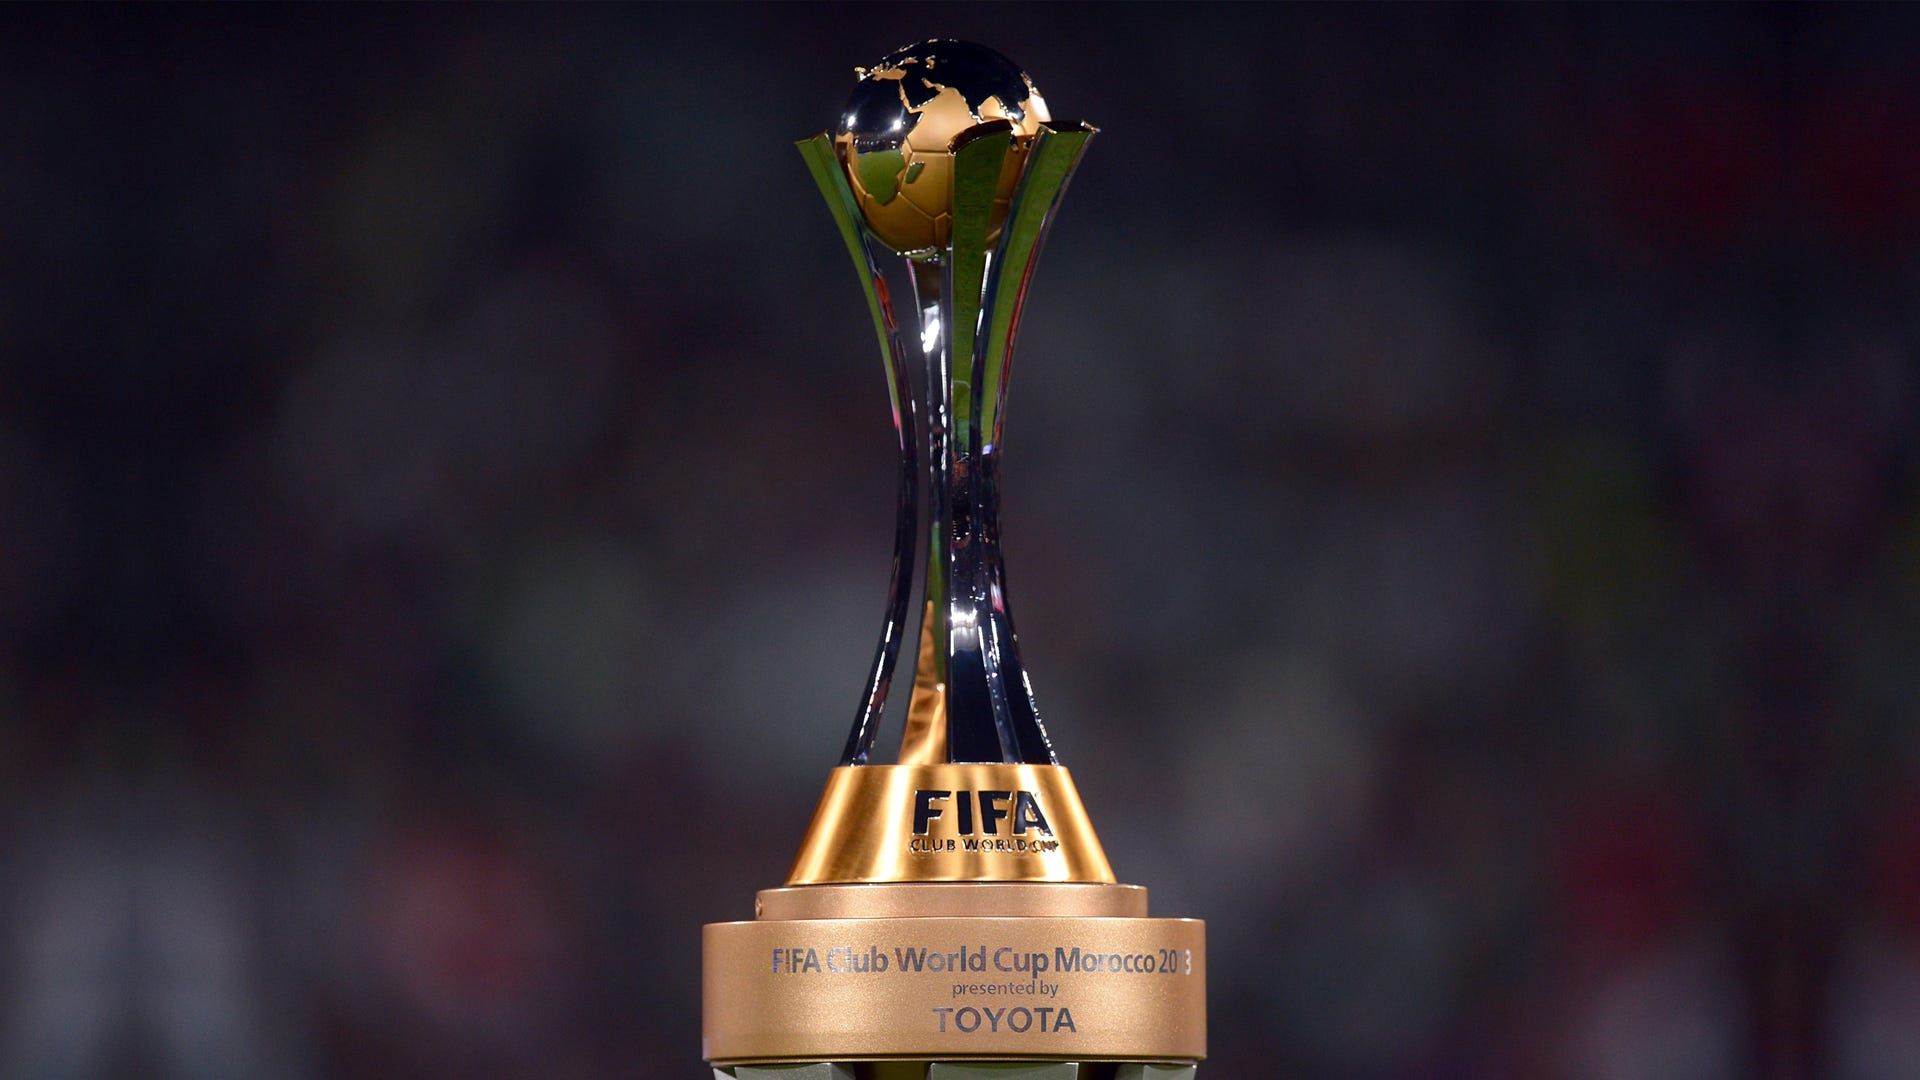 12月予定クラブ・ワールドカップの日本開催見送り決定…FIFA「将来日本